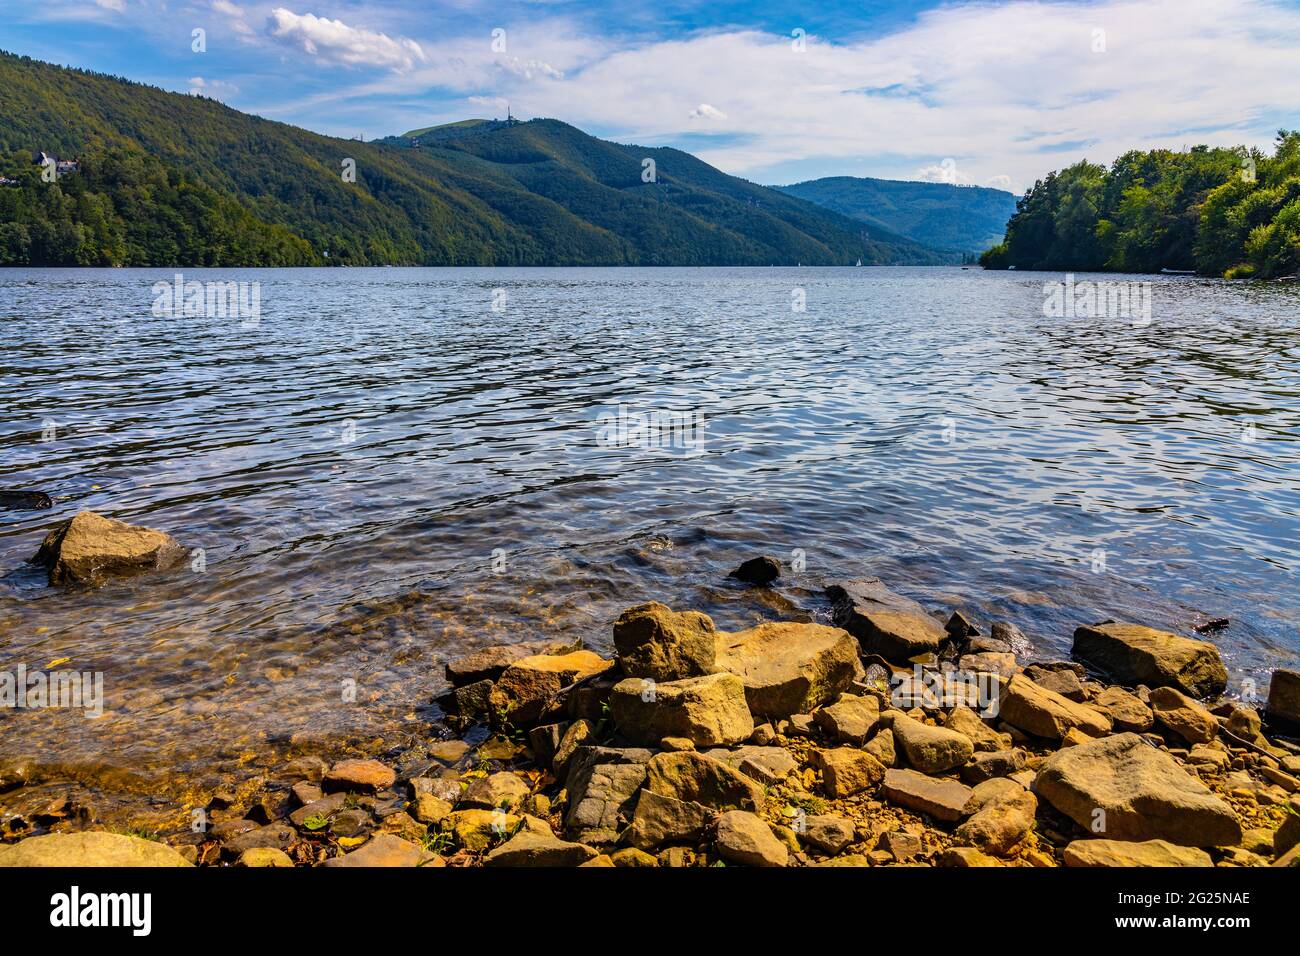 Vista panoramica sul lago Miedzybrodzkie e sui monti Beskidy con la montagna Gora ZAR vicino a Zywiec nella regione della Slesia in Polonia Foto Stock